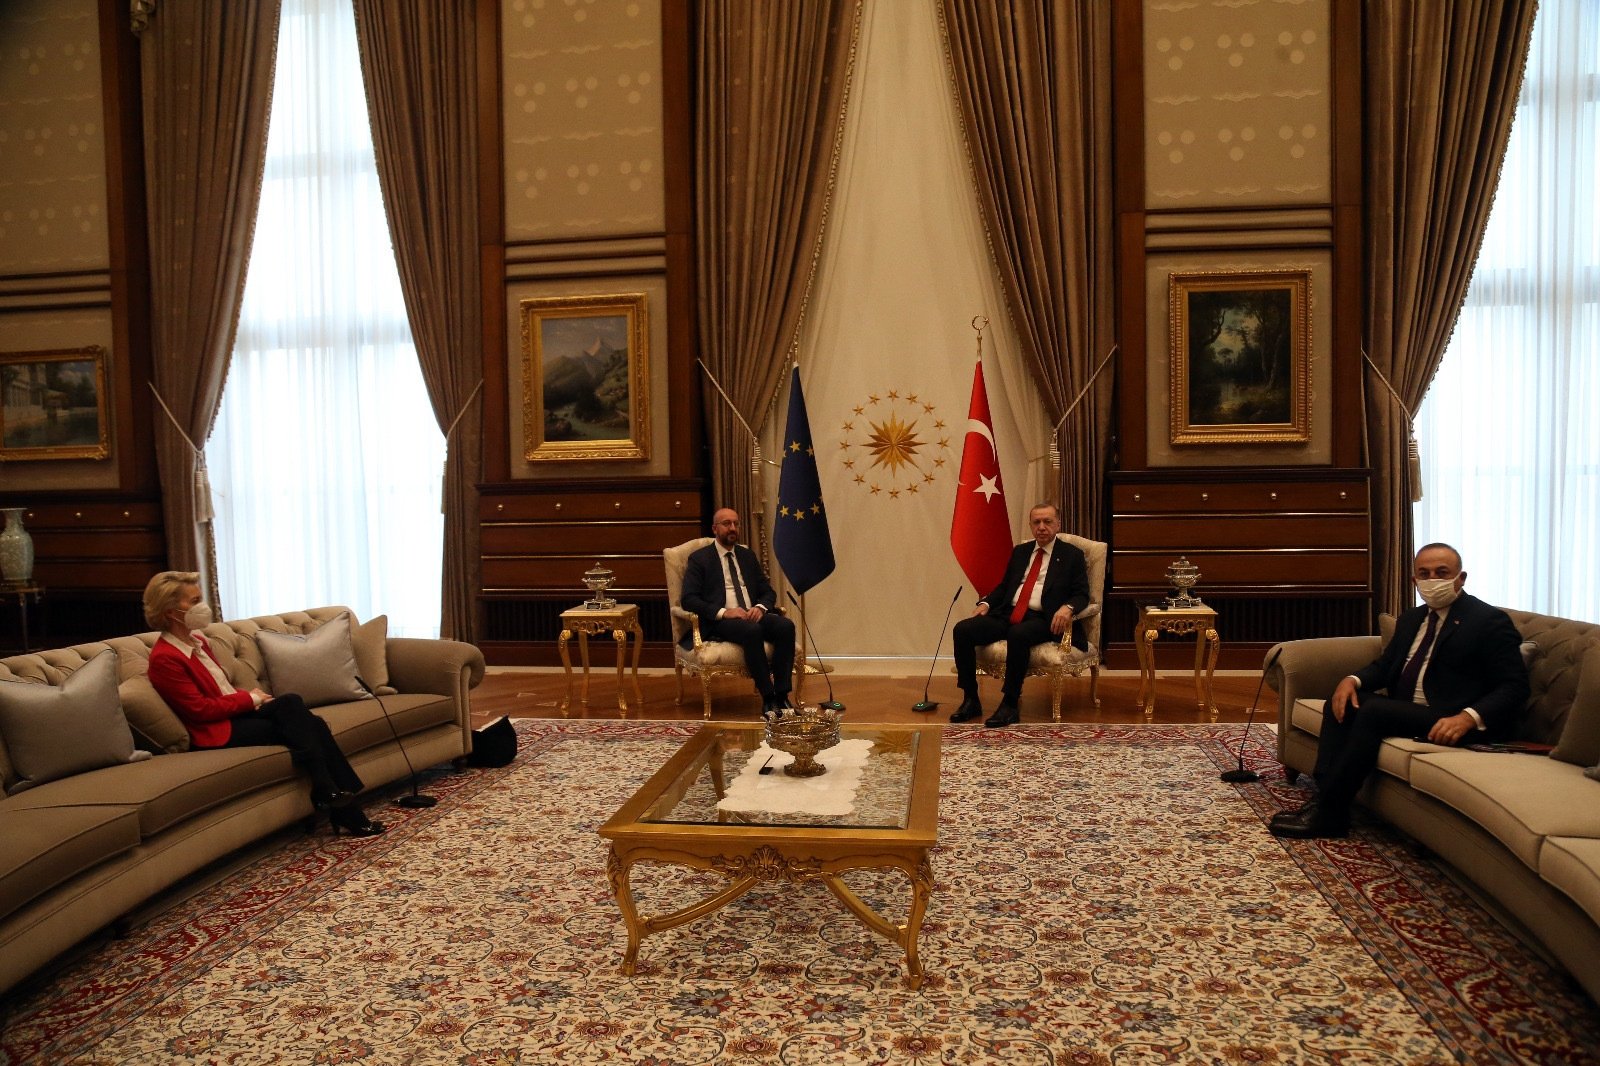 Эрдоган оставил на переговорах руководительницу Еврокомиссии без кресла, фото — Dailysabah